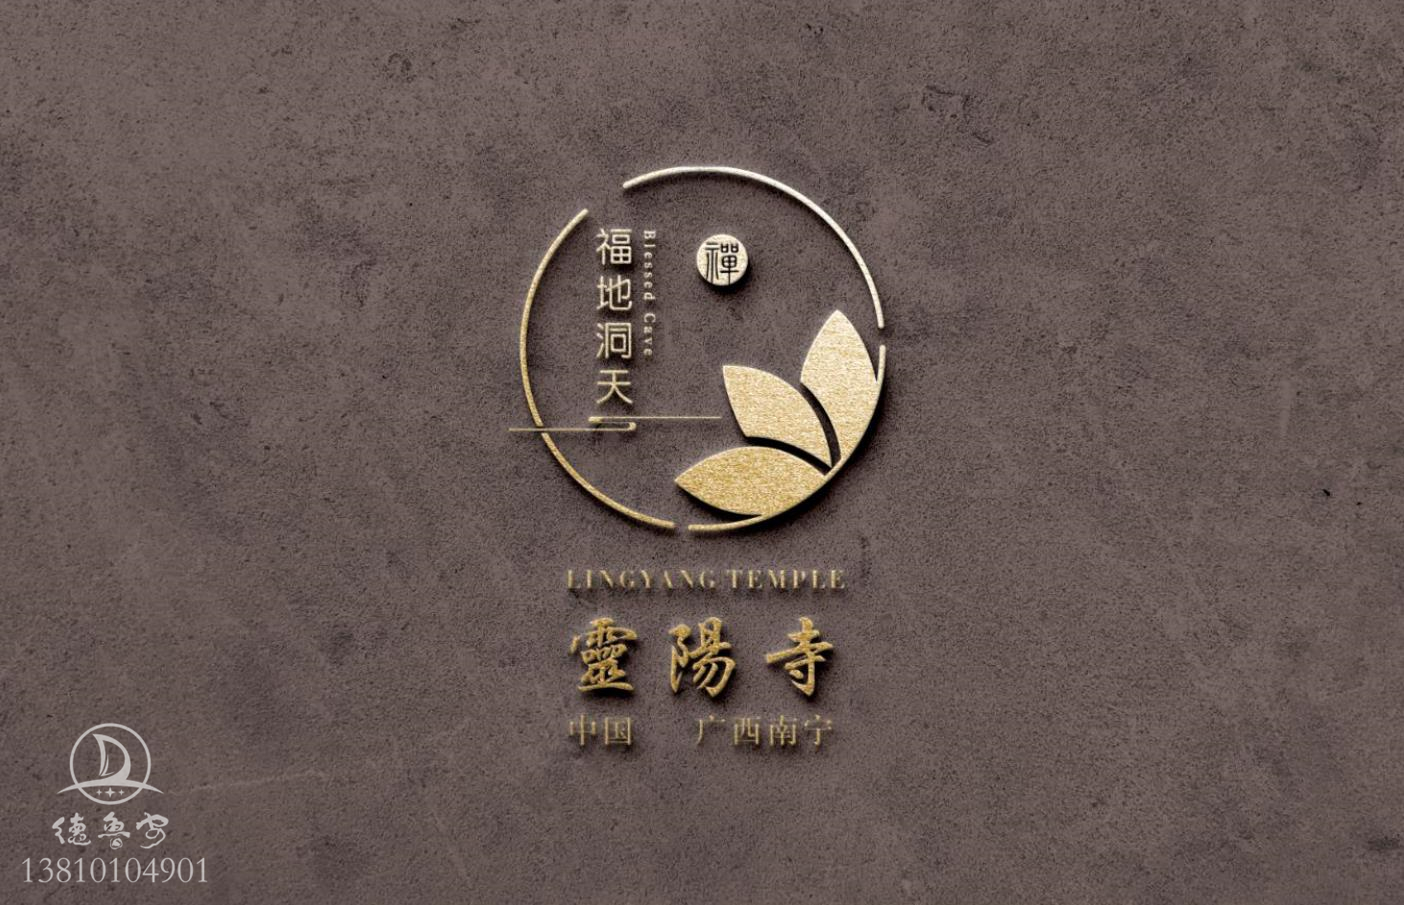 广西南宁市灵阳寺logo设计